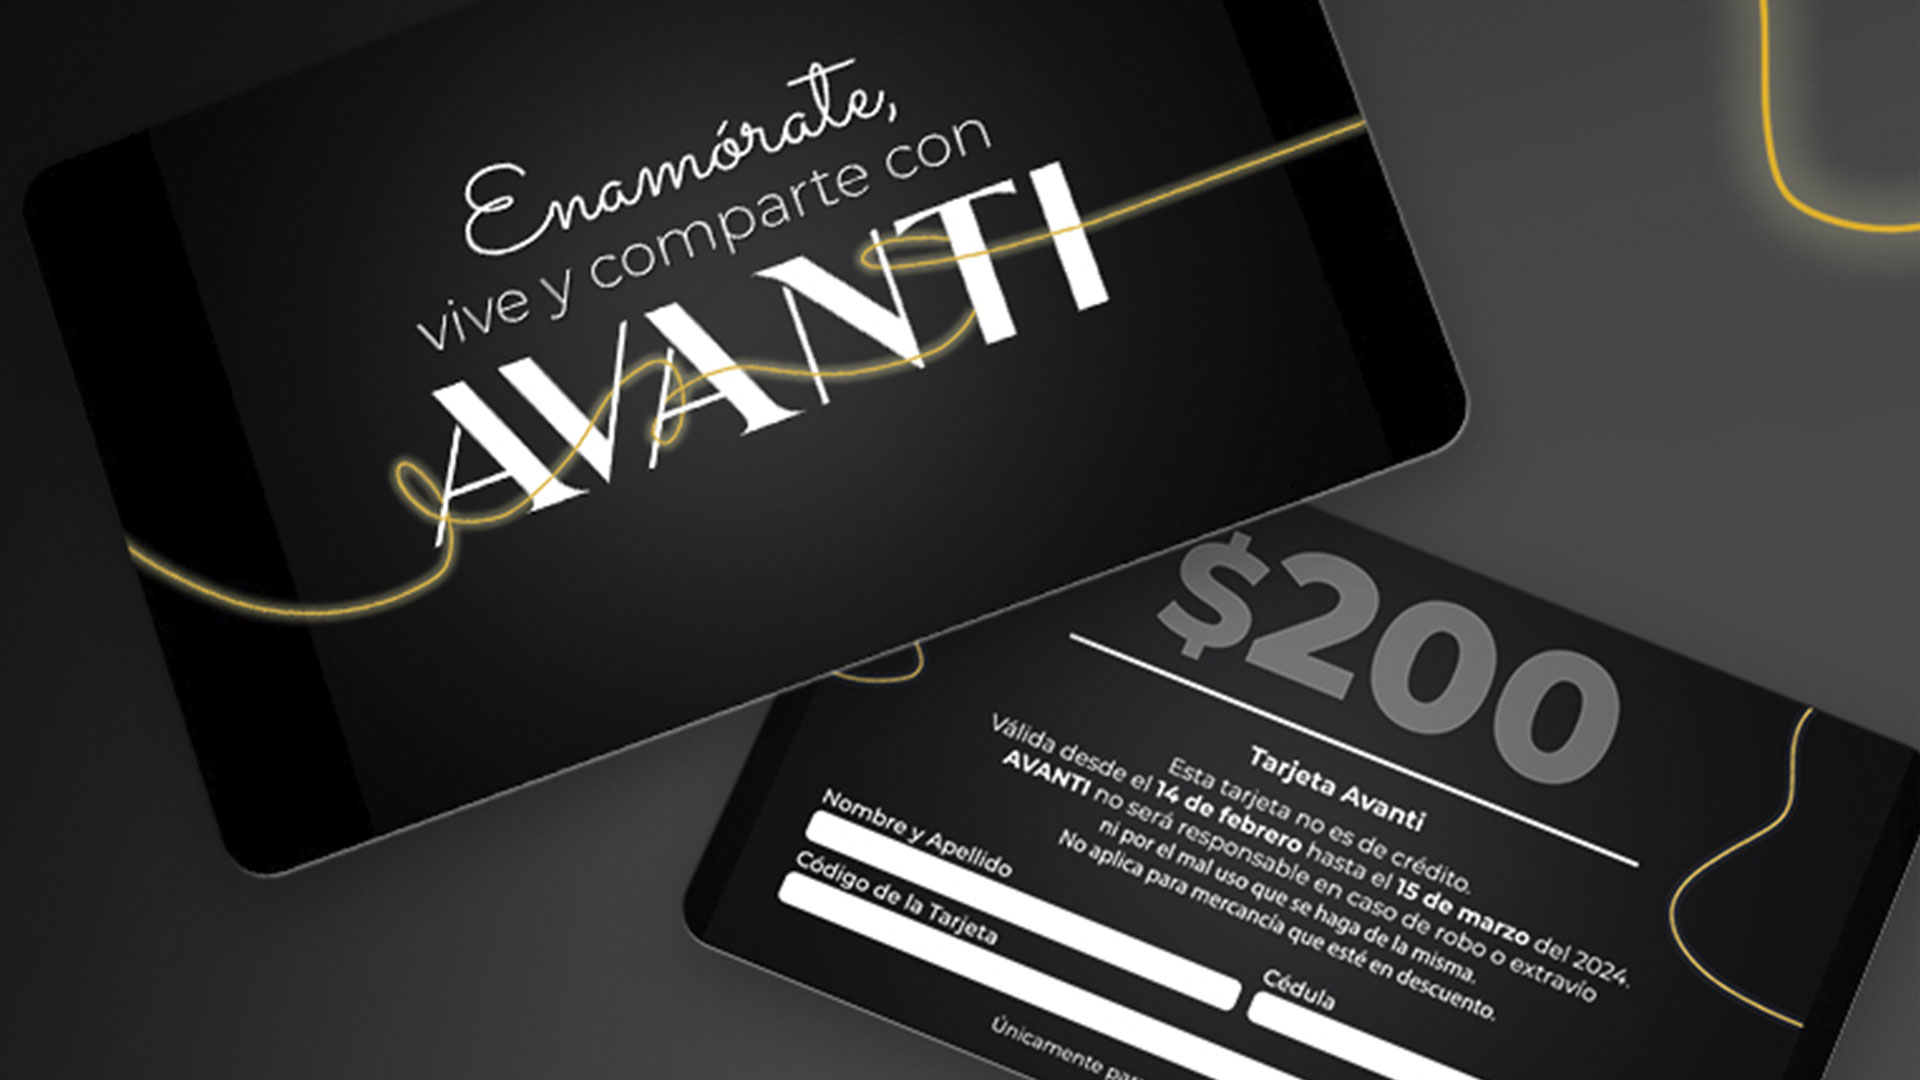 Colaboración de Avanti con Avior - Gift card de Avanti